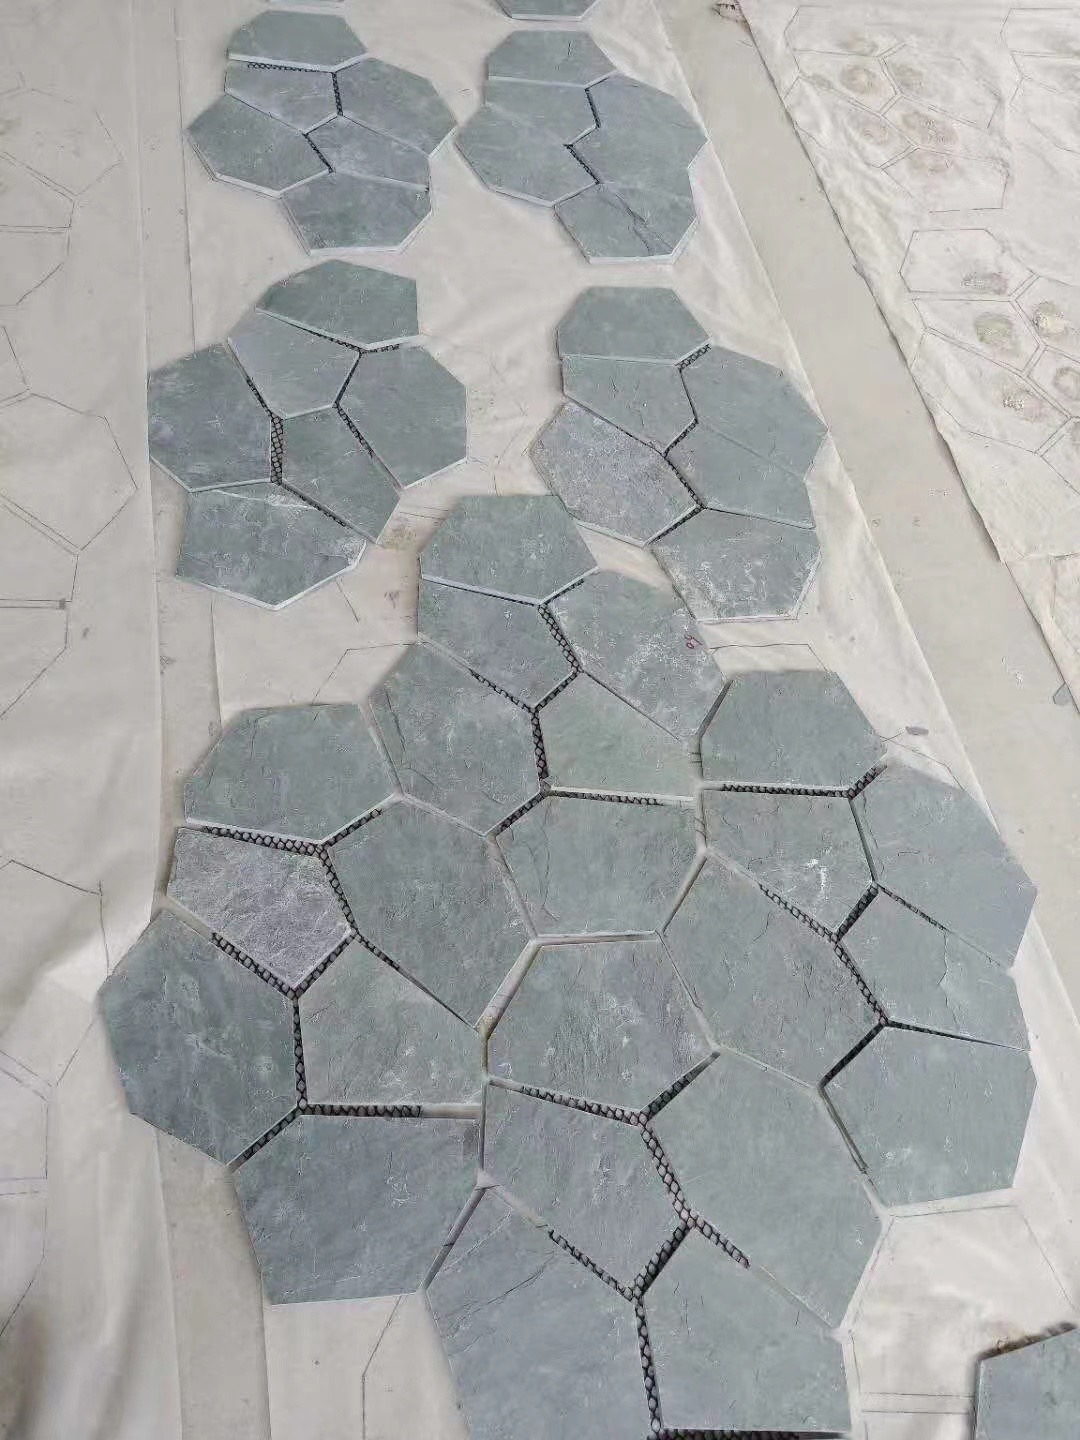 Green Slate Floor Tiles